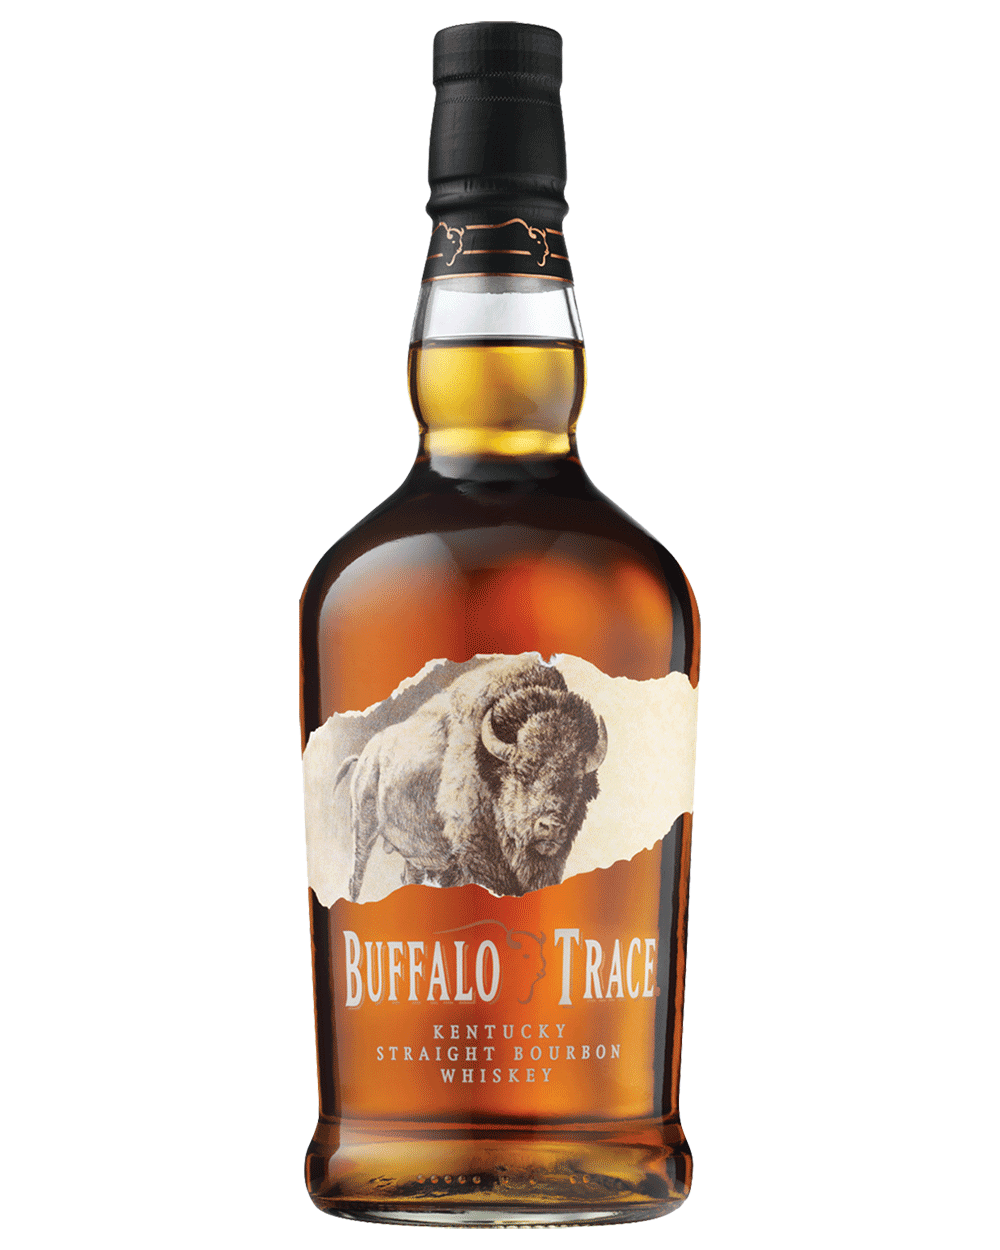 Buffalo Trace Kentucky Straight Bourbon Whiskey – The Barrel